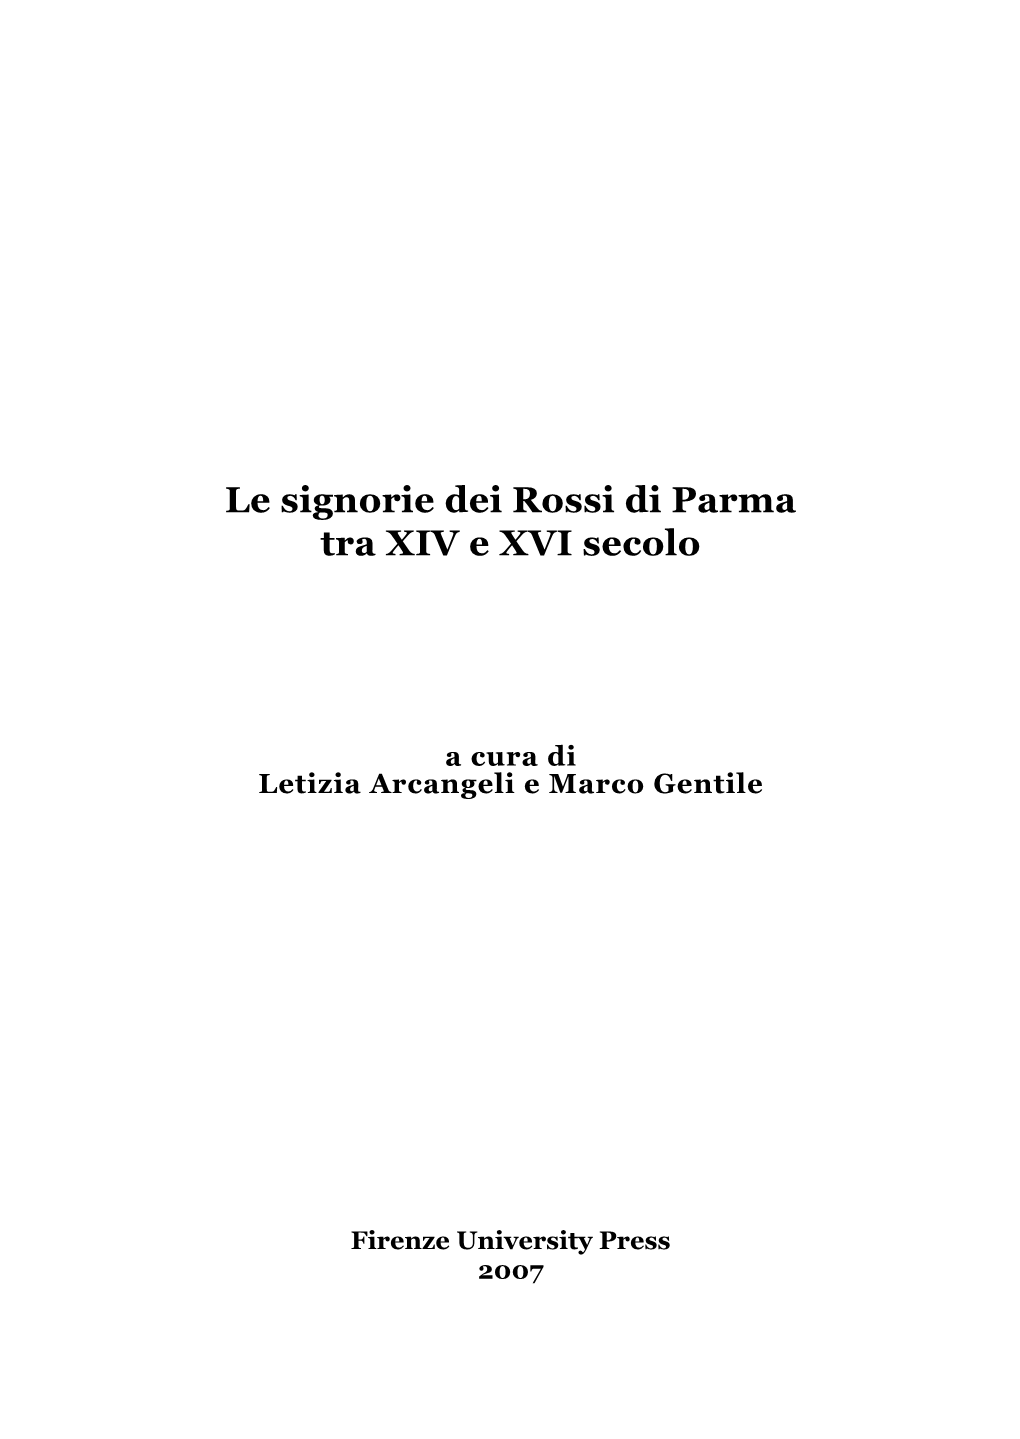 Le Signorie Dei Rossi Di Parma Tra XIV E XVI Secolo